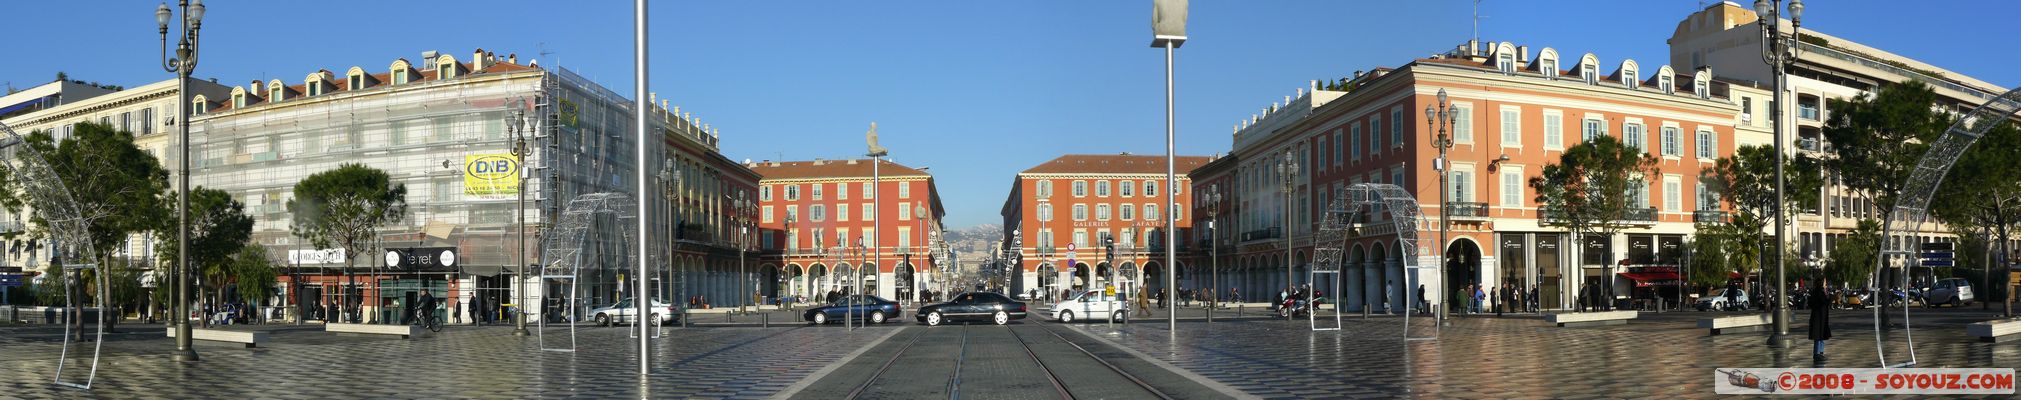 Nice - Place Massena - panorama
Mots-clés: panorama